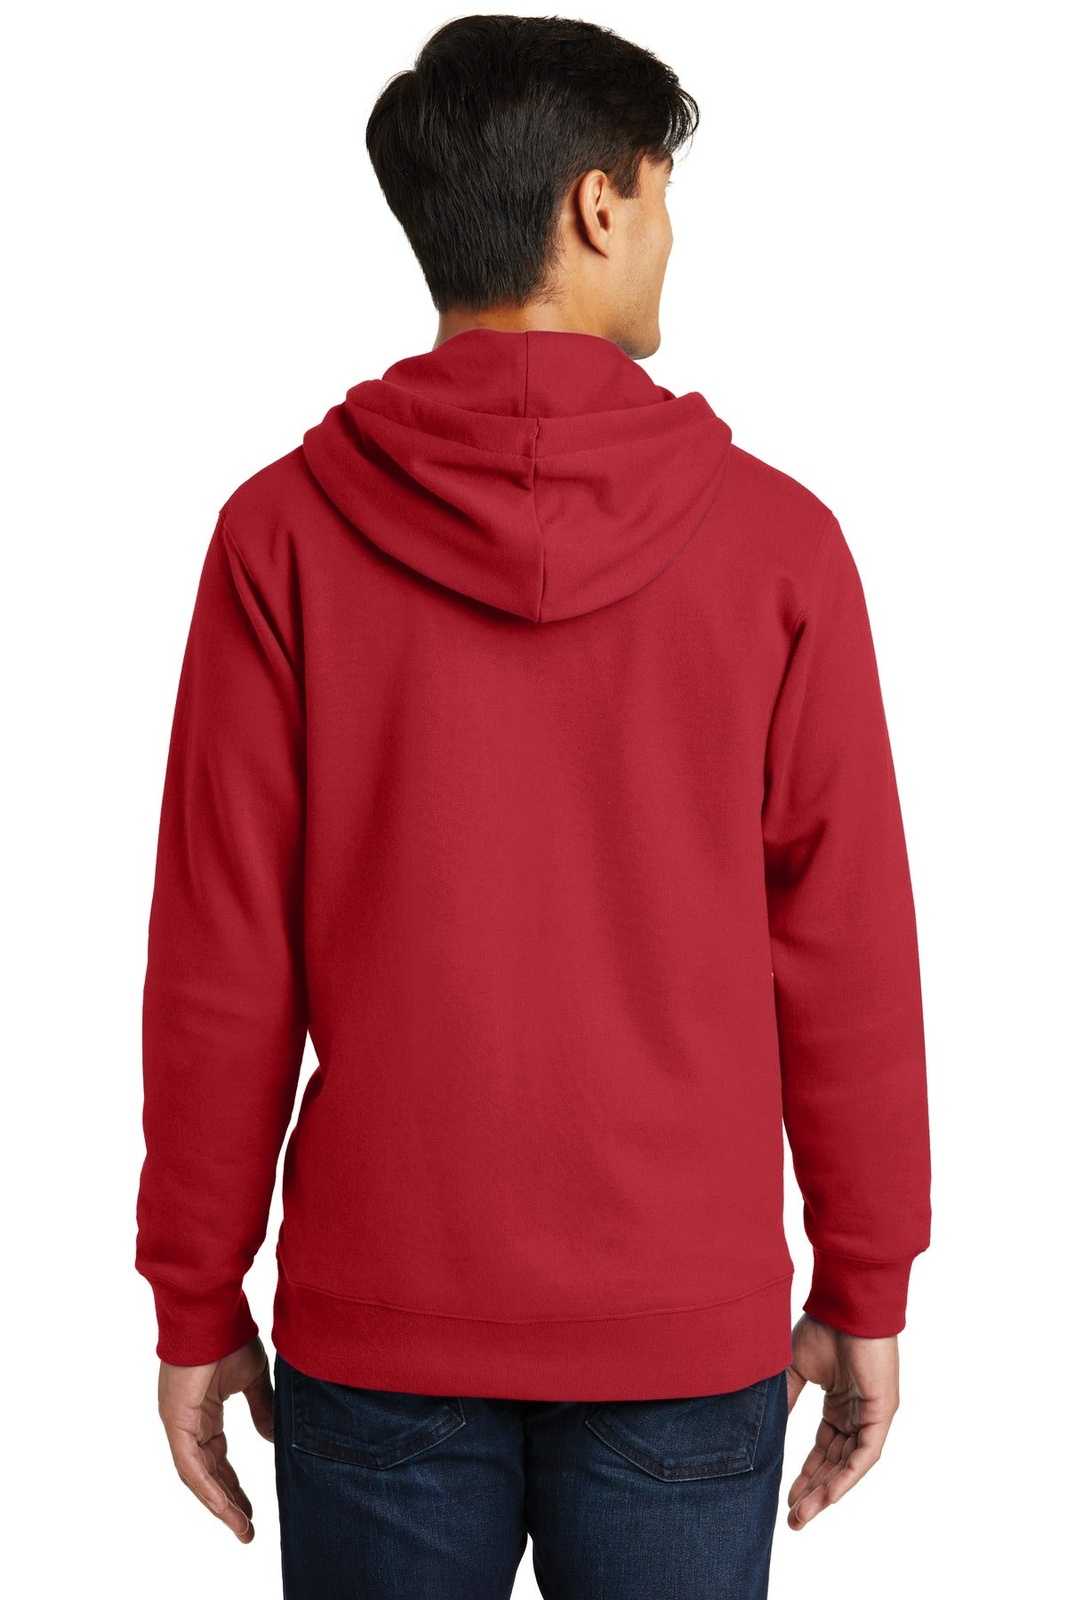 Port &amp; Company PC850ZH Fan Favorite Fleece Full-Zip Hooded Sweatshirt - Team Cardinal - HIT a Double - 2